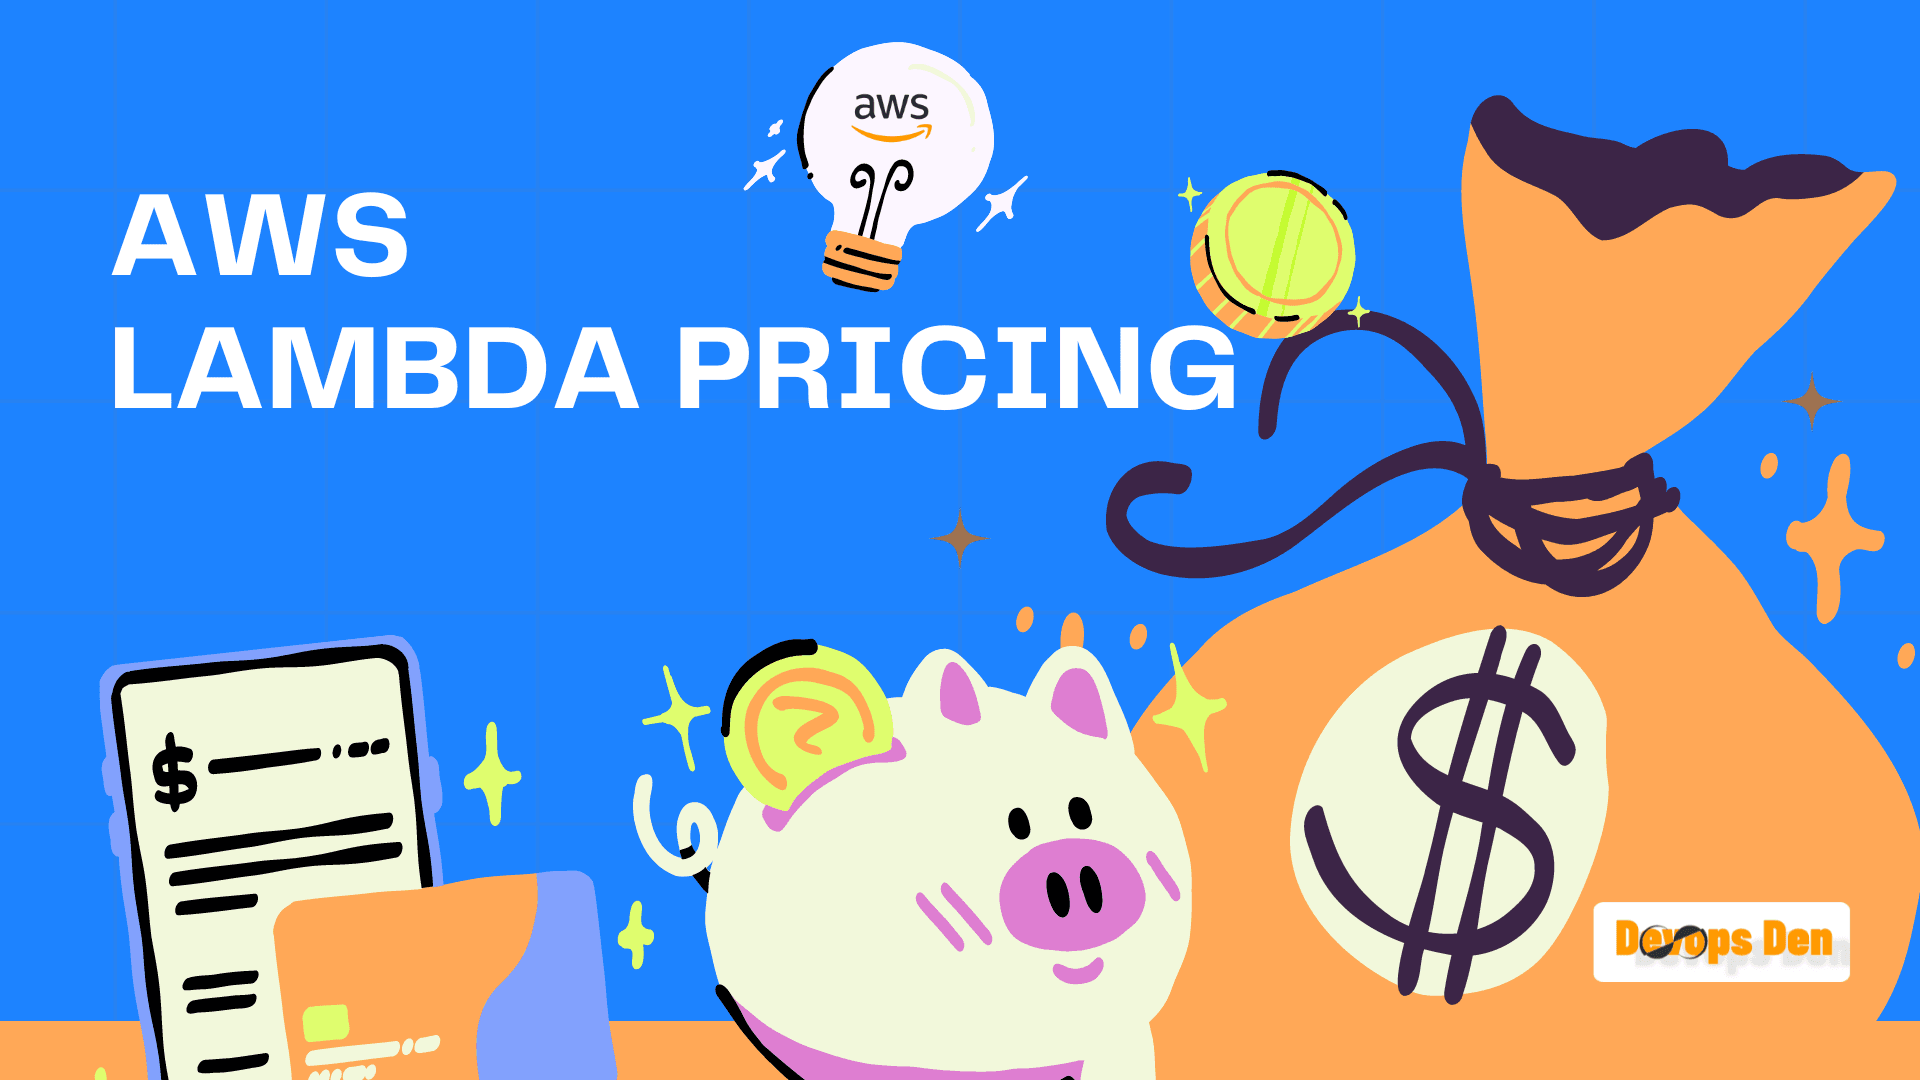 AWS Lambda Pricing